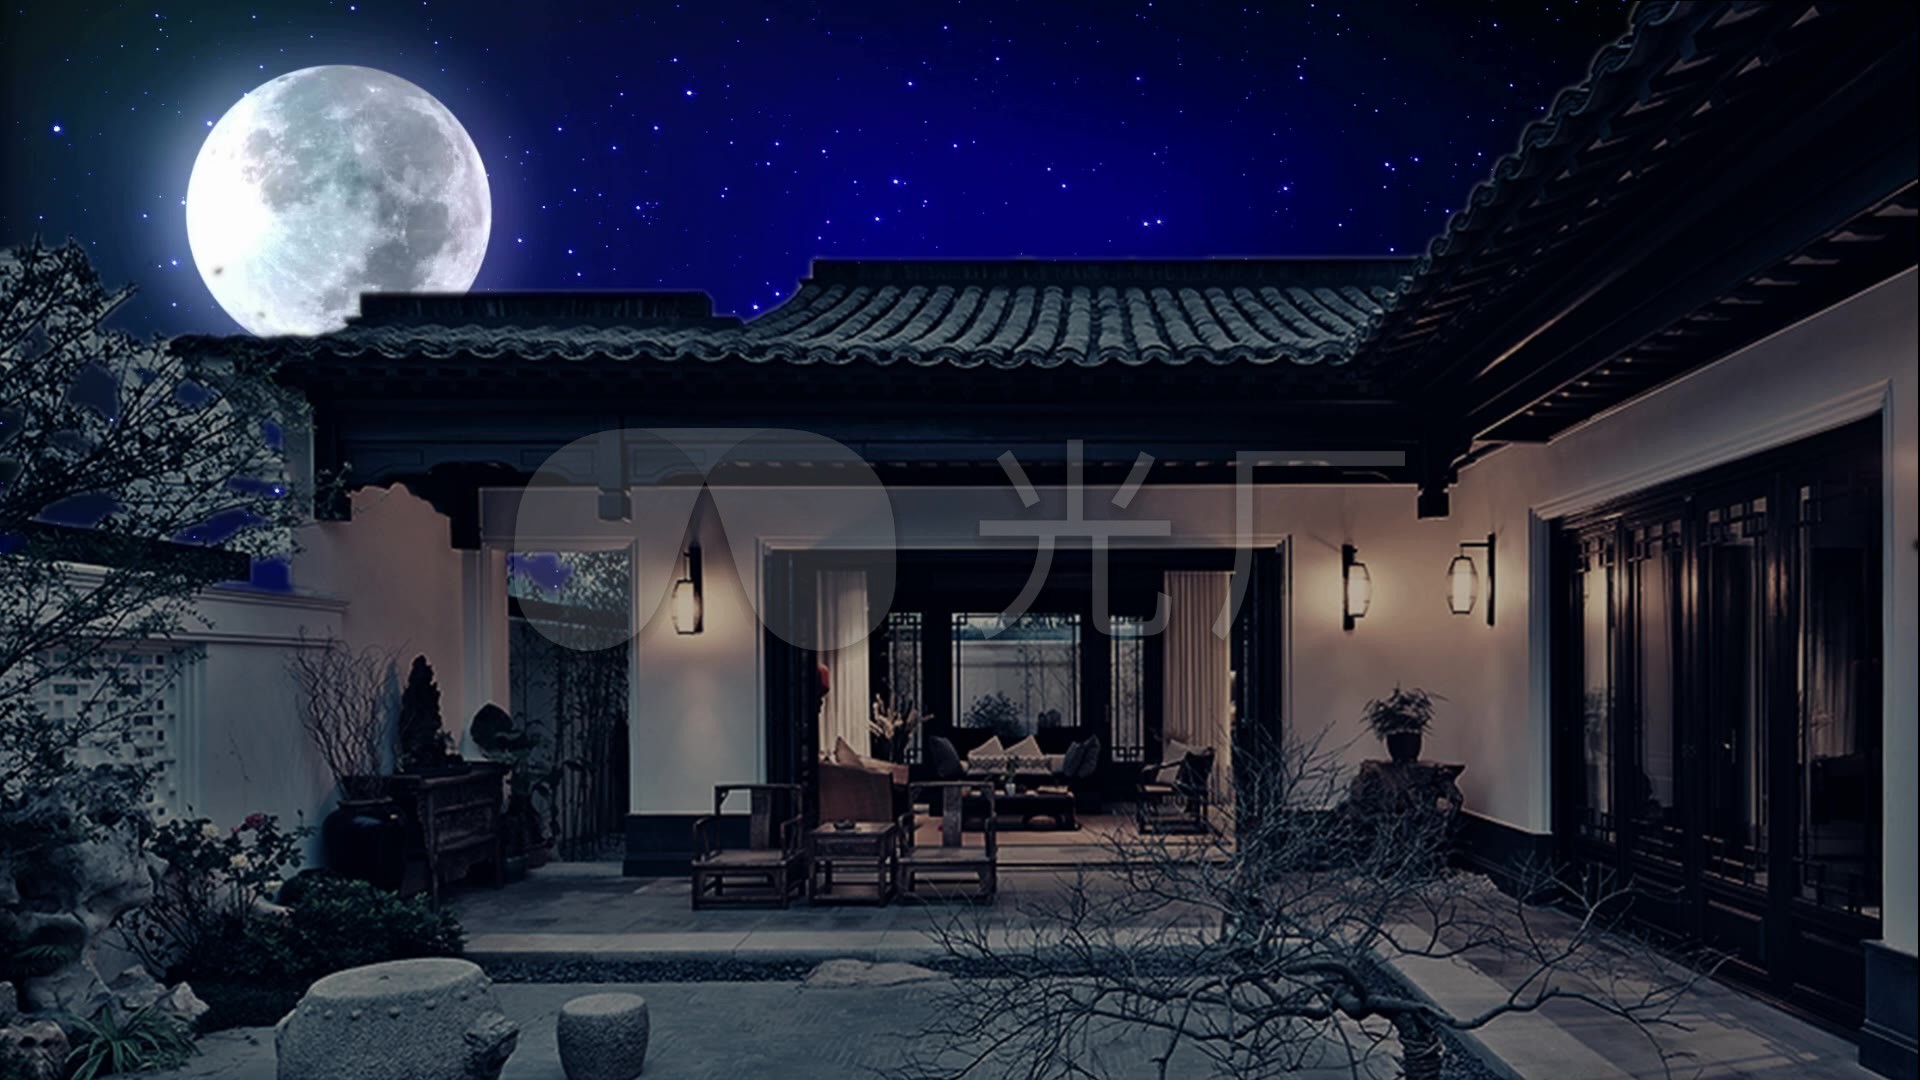 月亮 月 心 - Pixabay上的免费图片 - Pixabay